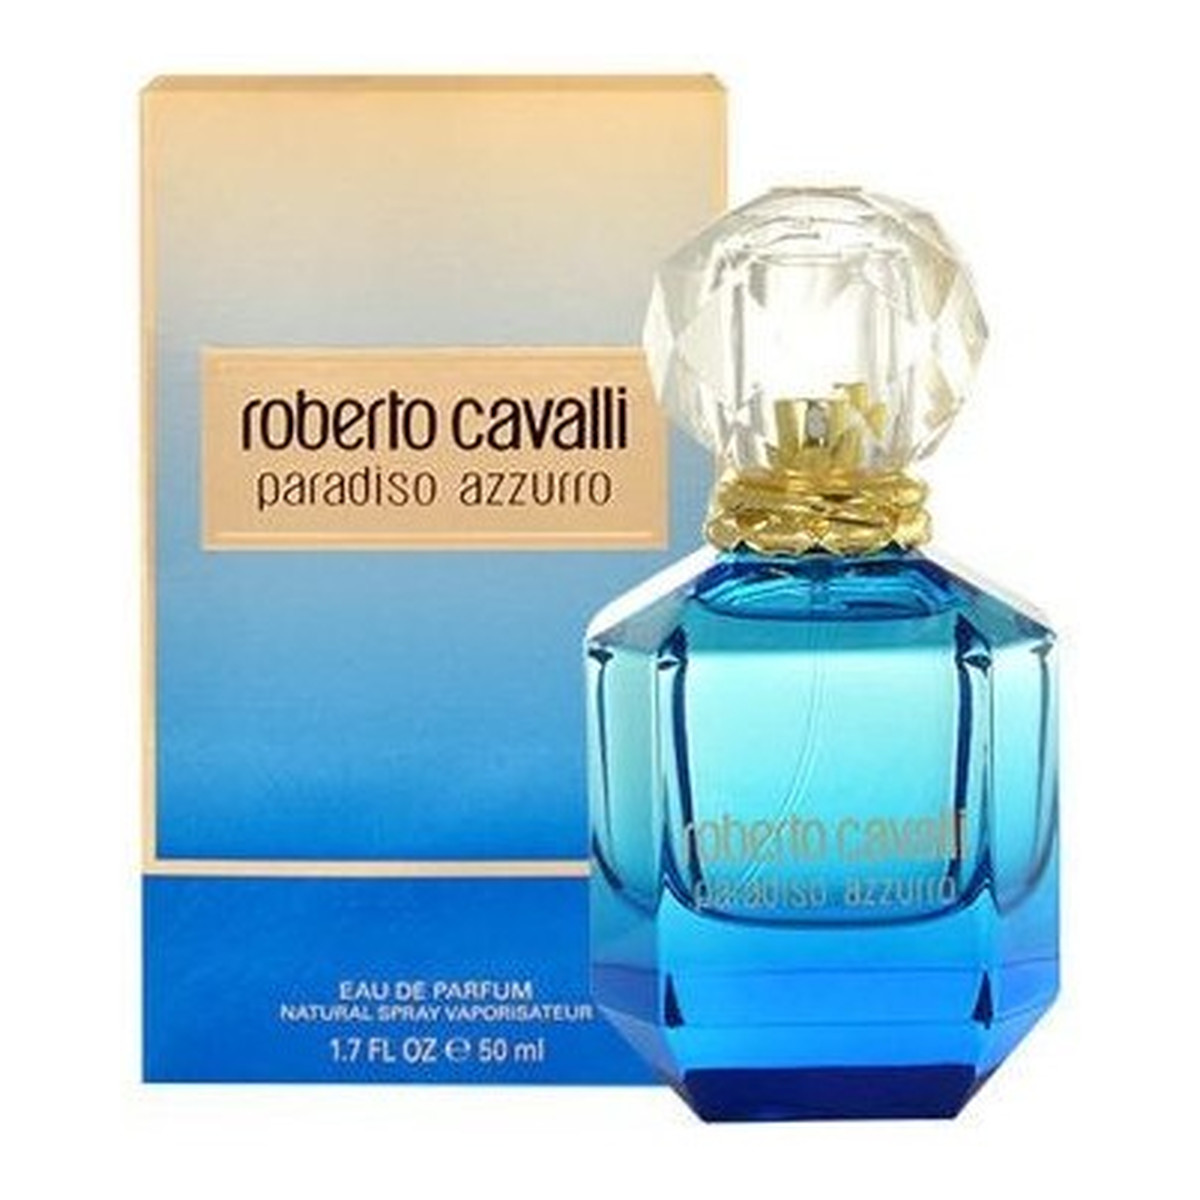 Roberto Cavalli Paradiso Azzurro Woda perfumowana spray 50ml